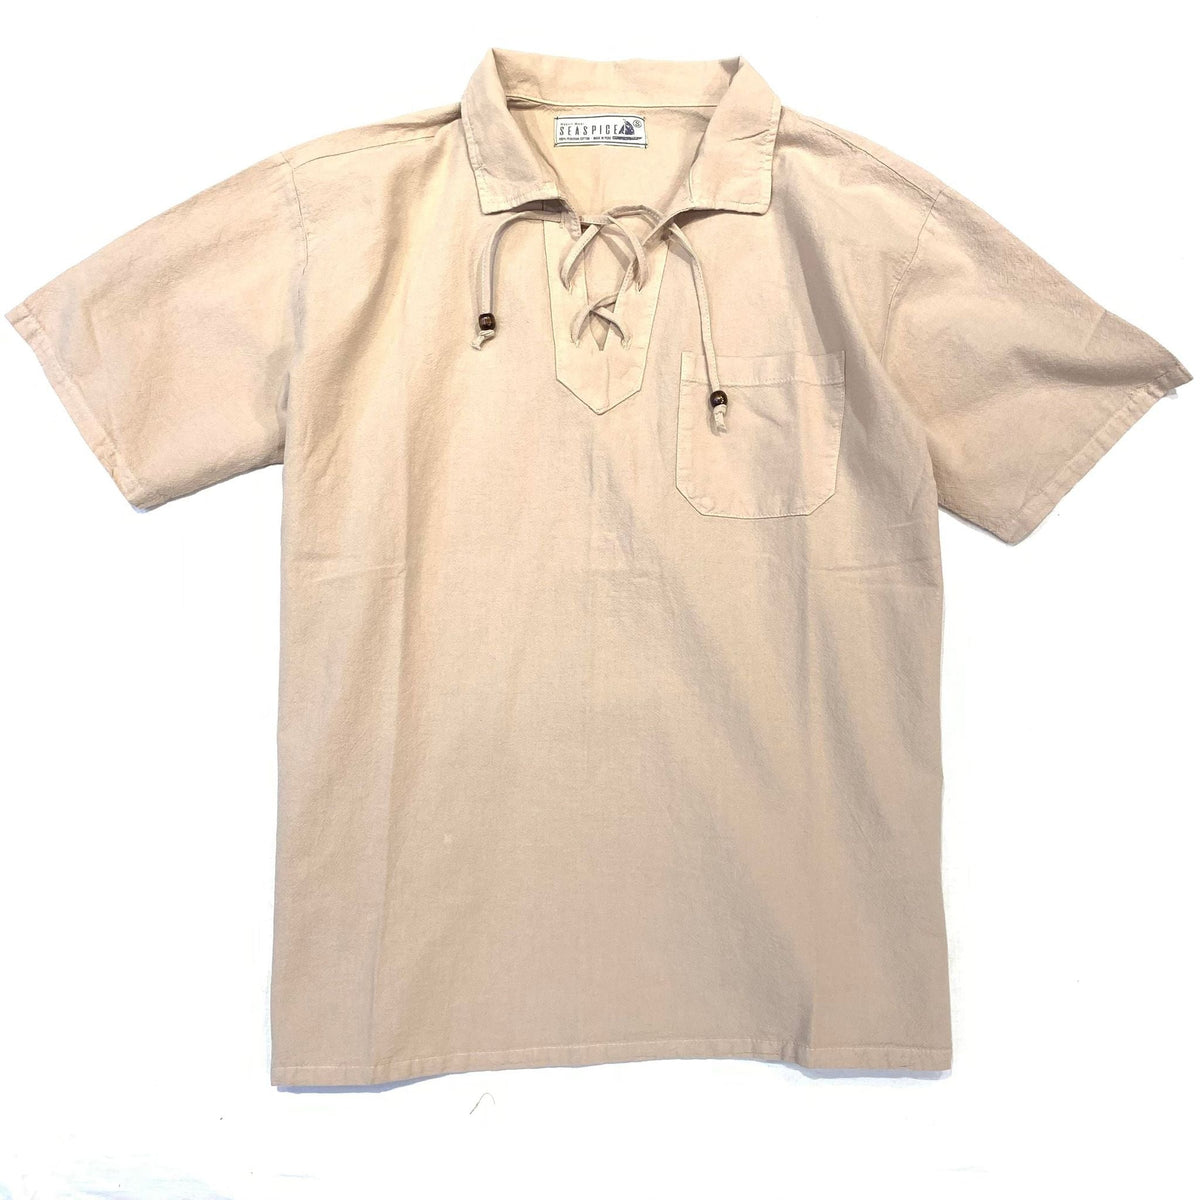 Seaspice Tan Lace Boho Linen Shirt - Dudes Boutique